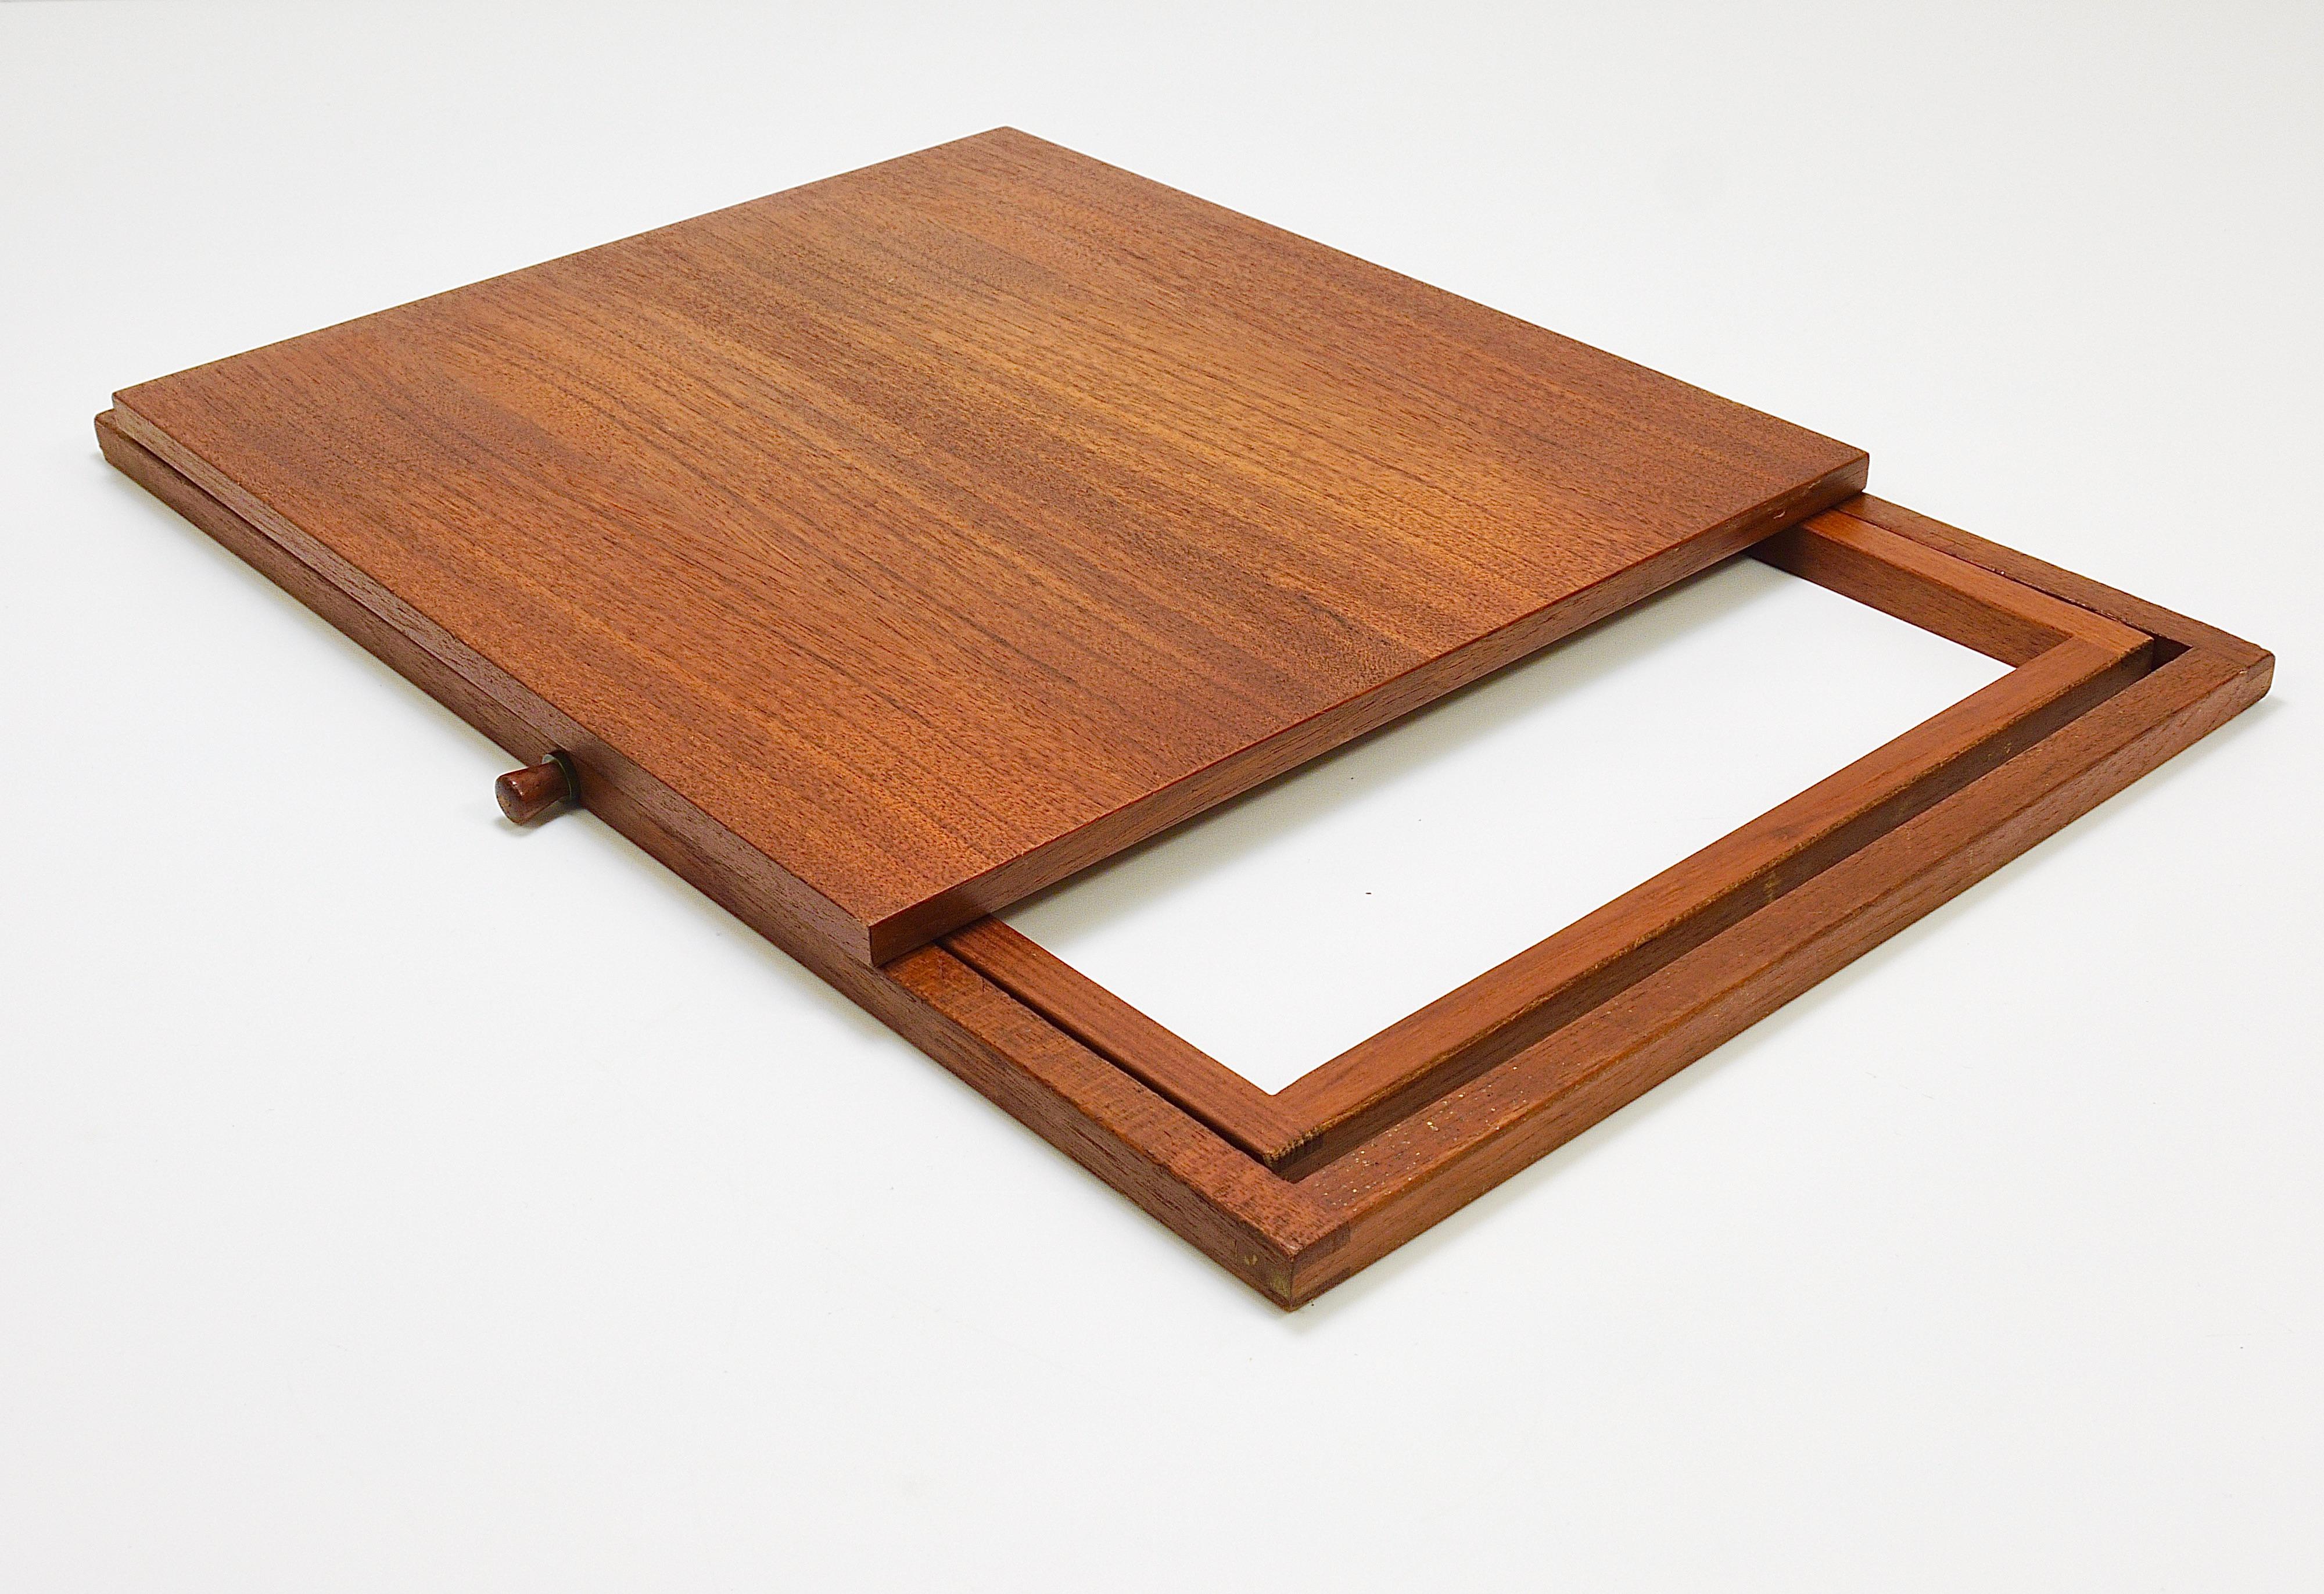 Three Illum Wikkelso Danish Modern Teak Folding Tables, Silkeborg Denmark, 1960s For Sale 9